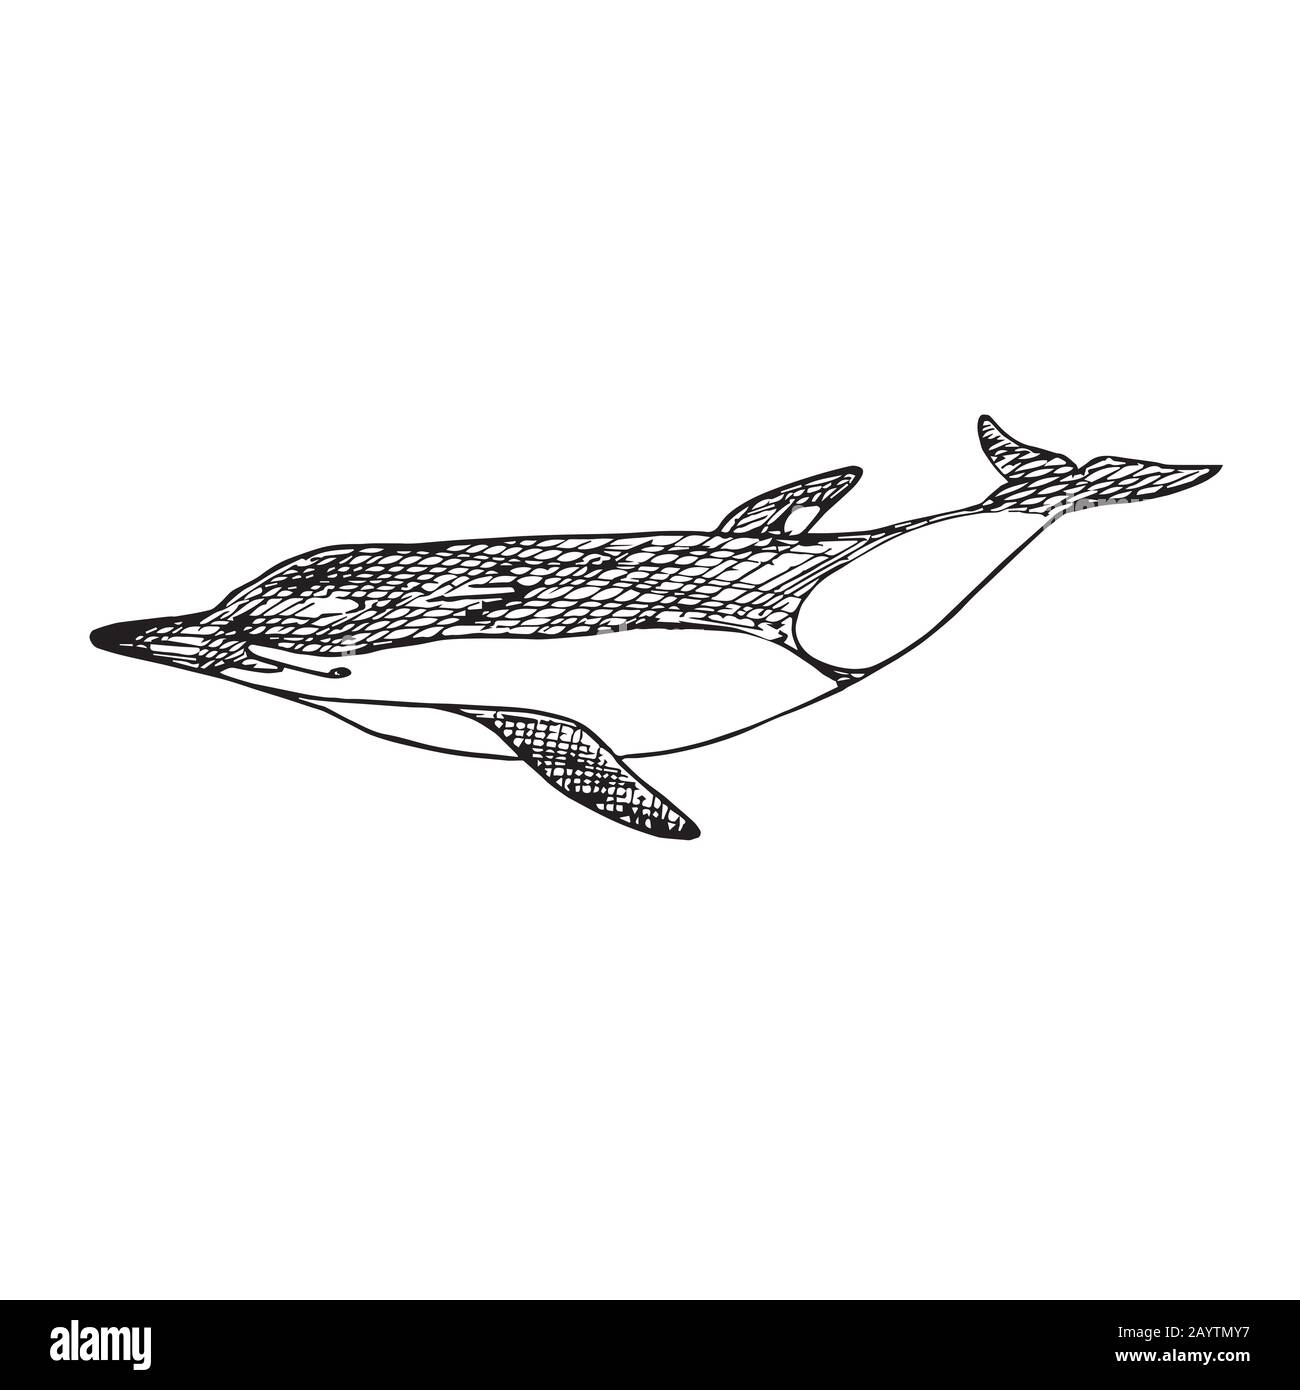 Dauphin commun à bec court, gribouille dessinée à la main, esquisse, illustration du contour Banque D'Images